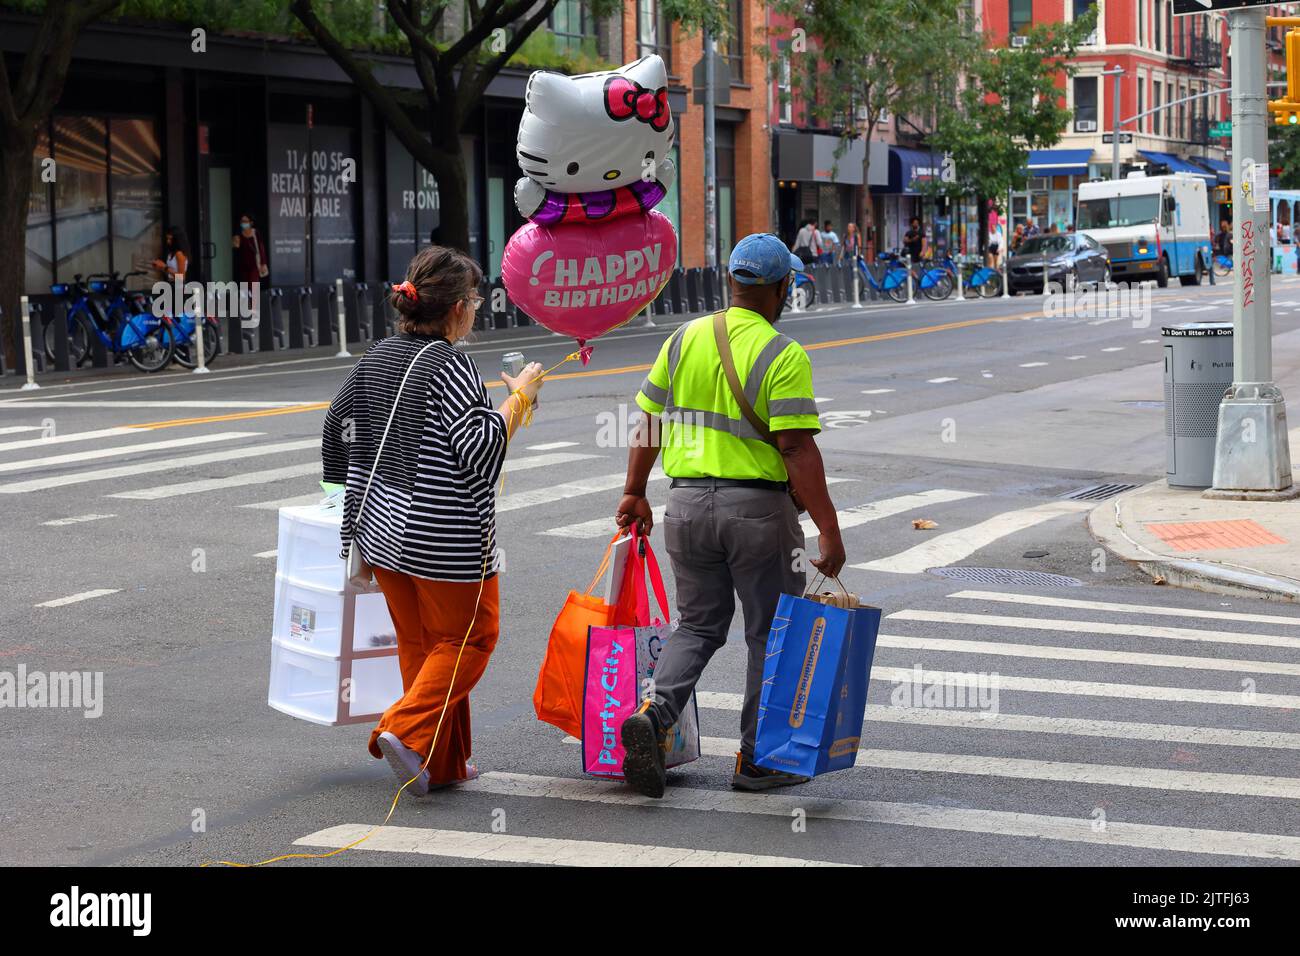 Persone che camminano per una strada con un Hello Kitty mongolfiera felice compleanno e forniture partito nel quartiere East Village a Manhattan, New York City Foto Stock